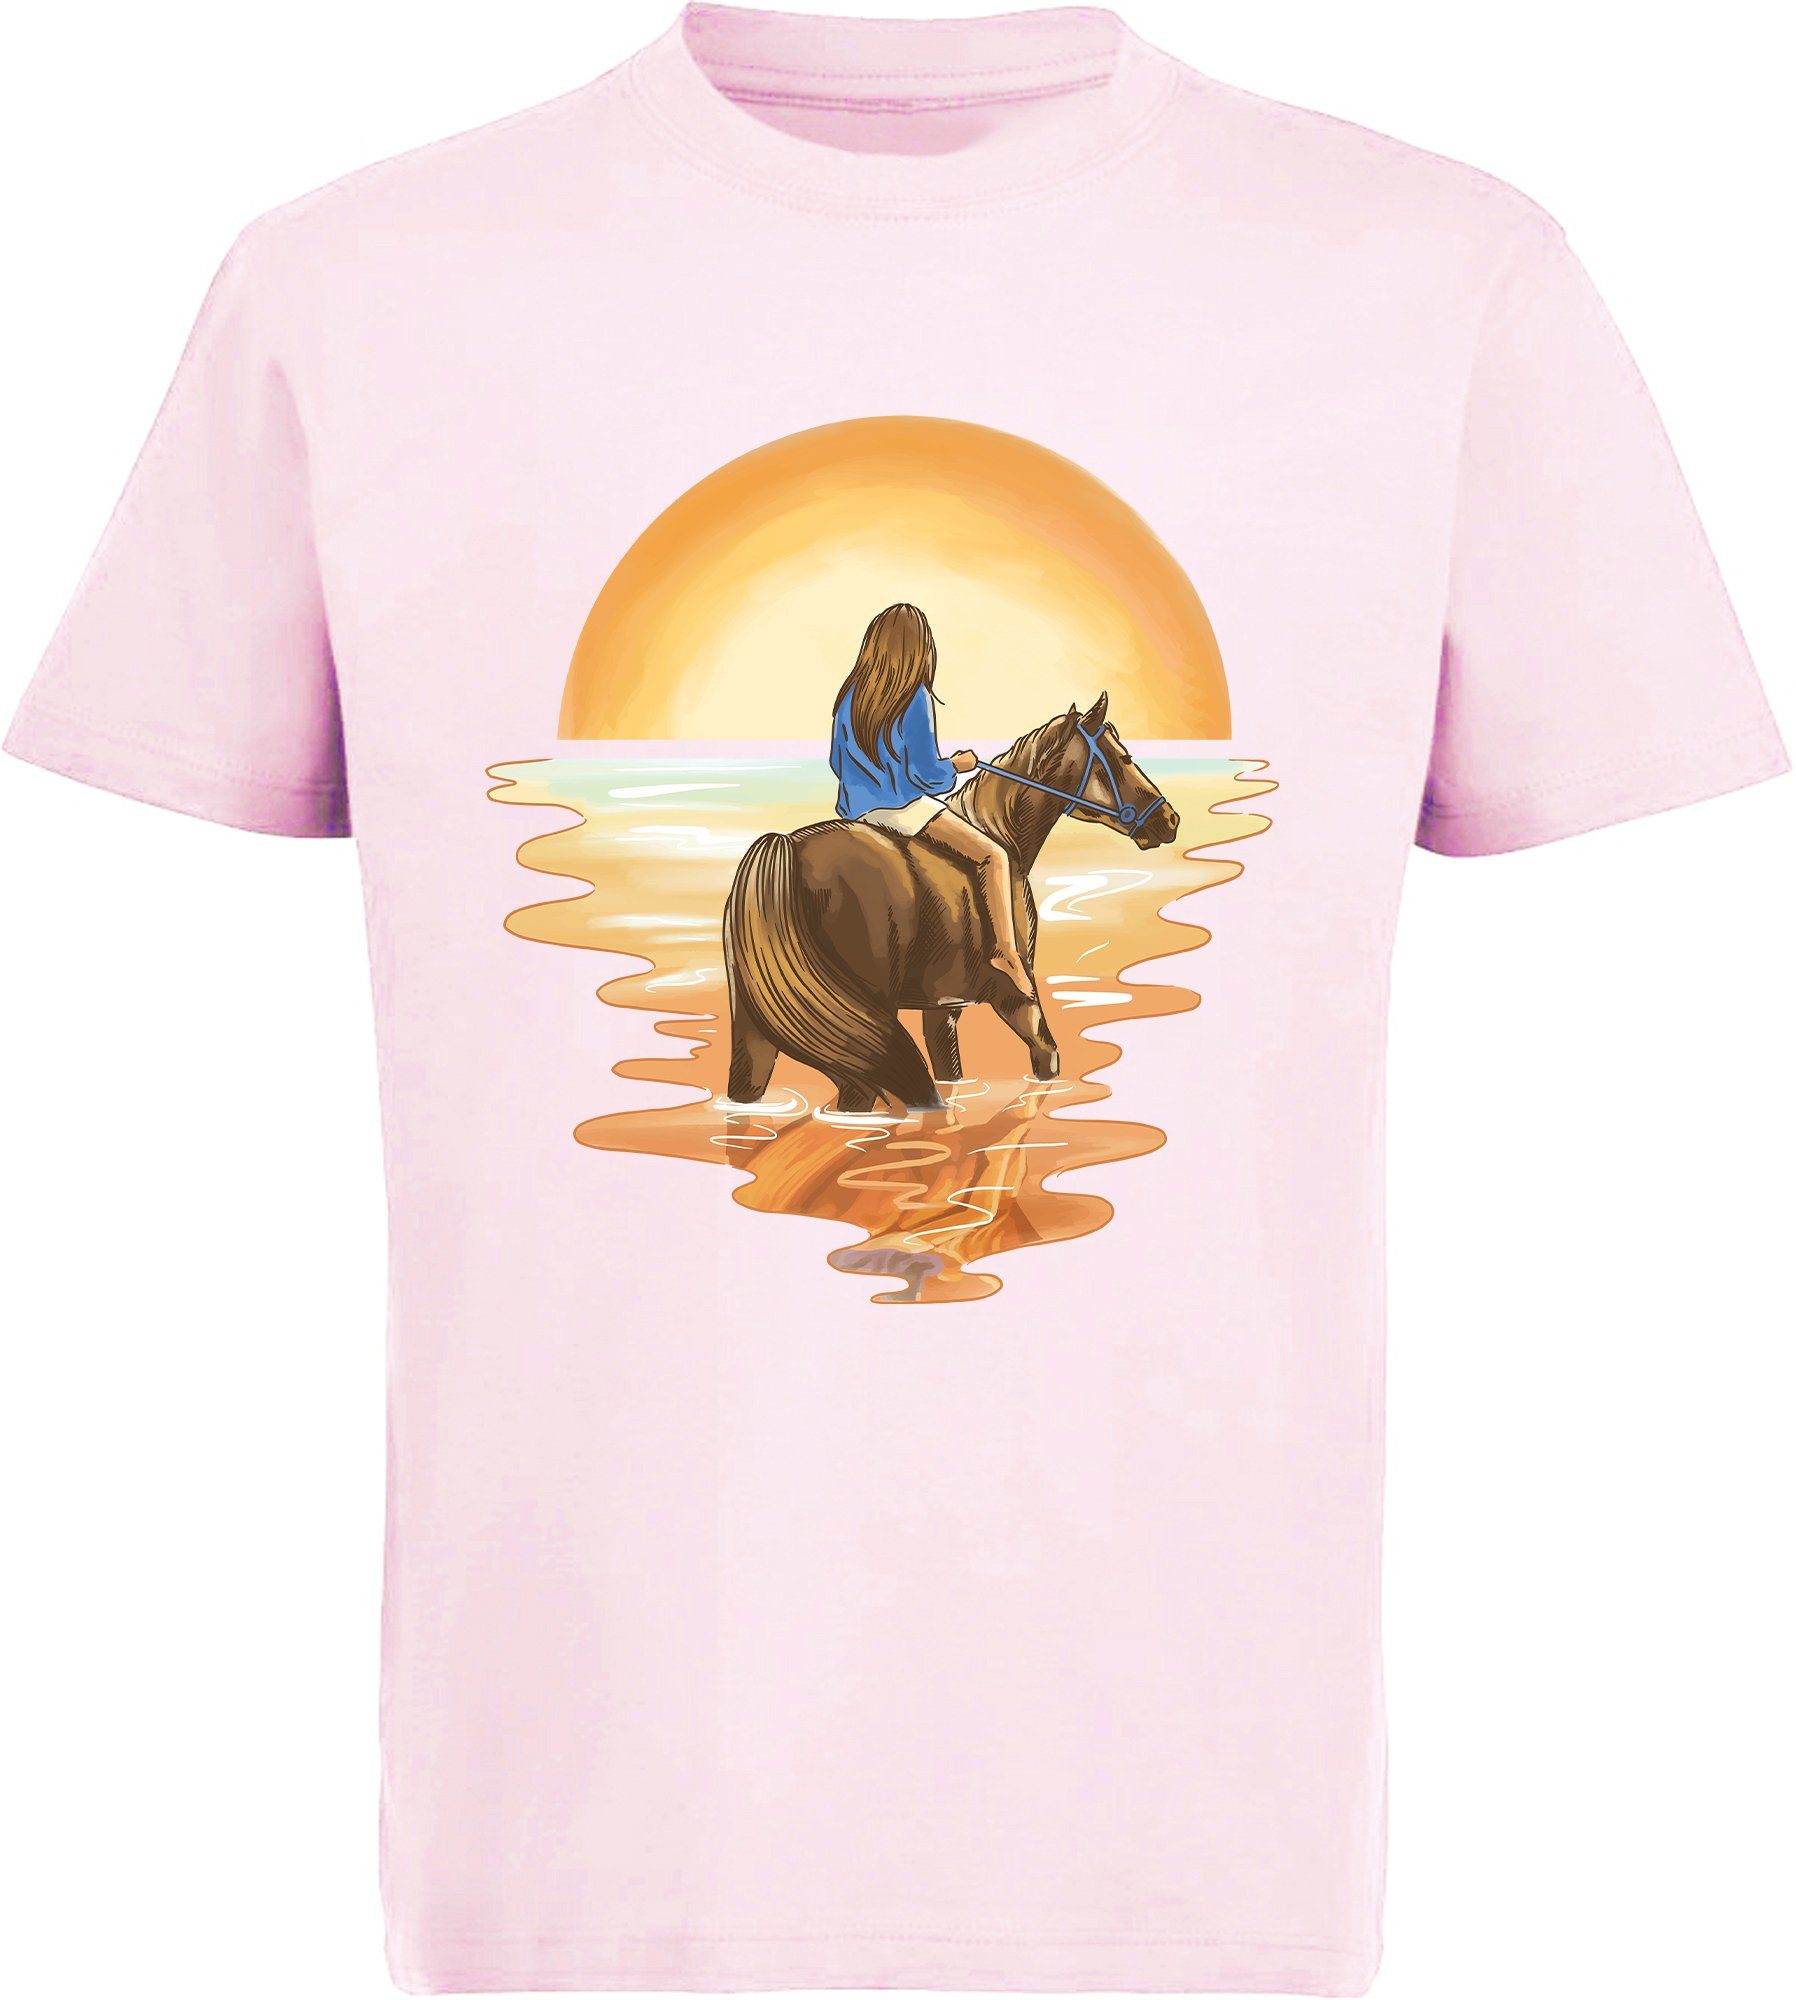 Print-Shirt Baumwollshirt i140 Reiterin MyDesign24 Aufdruck, T-Shirt bedrucktes mit Pferd im Wasser rosa Mädchen mit